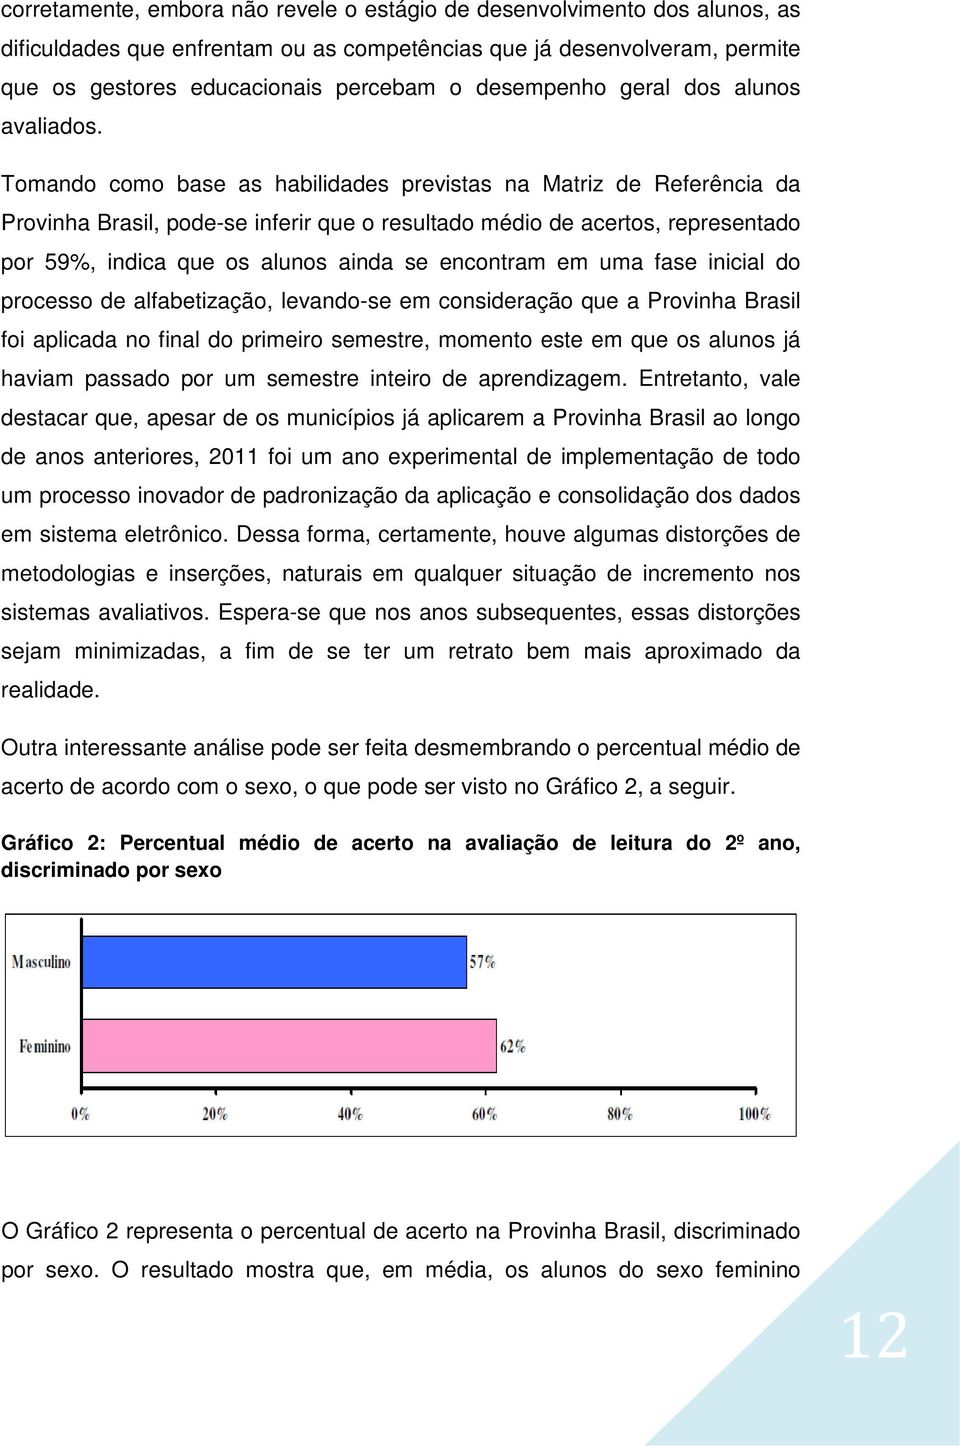 Tomando como base as habilidades previstas na Matriz de Referência da Provinha Brasil, pode-se inferir que o resultado médio de acertos, representado por 59%, indica que os alunos ainda se encontram